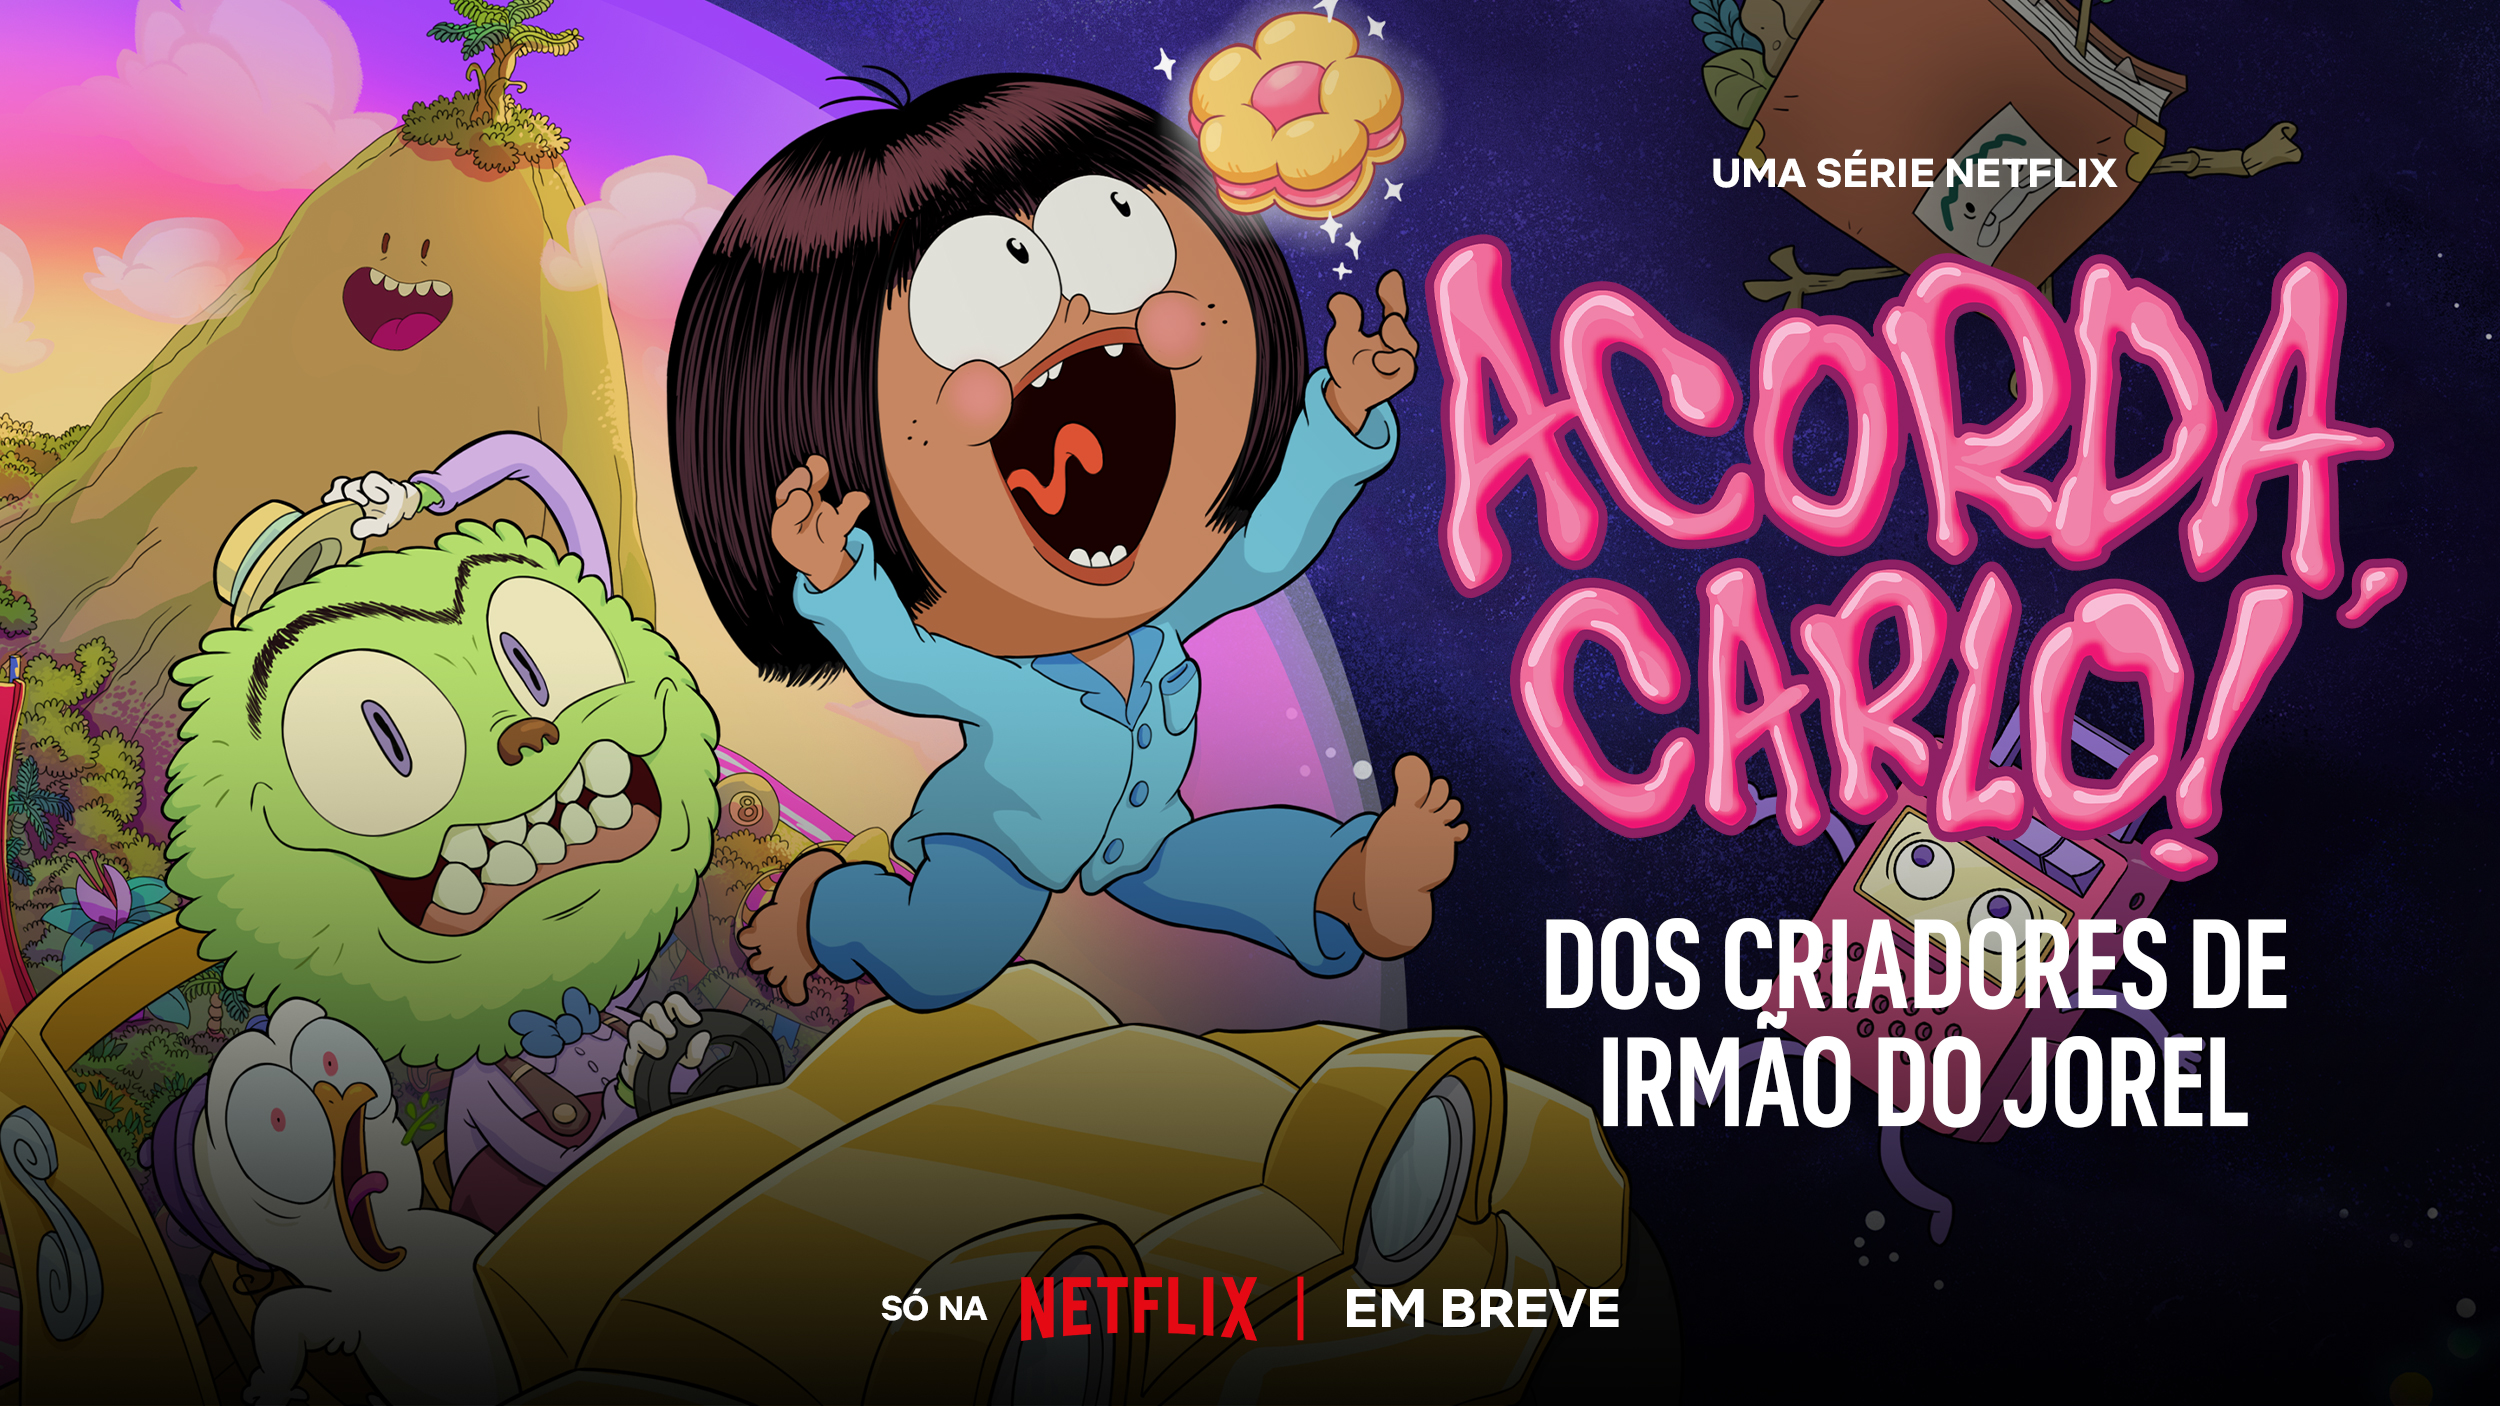 Animação brasileira “Acorda, Carlo!” estreia na Netflix em 6 de julho